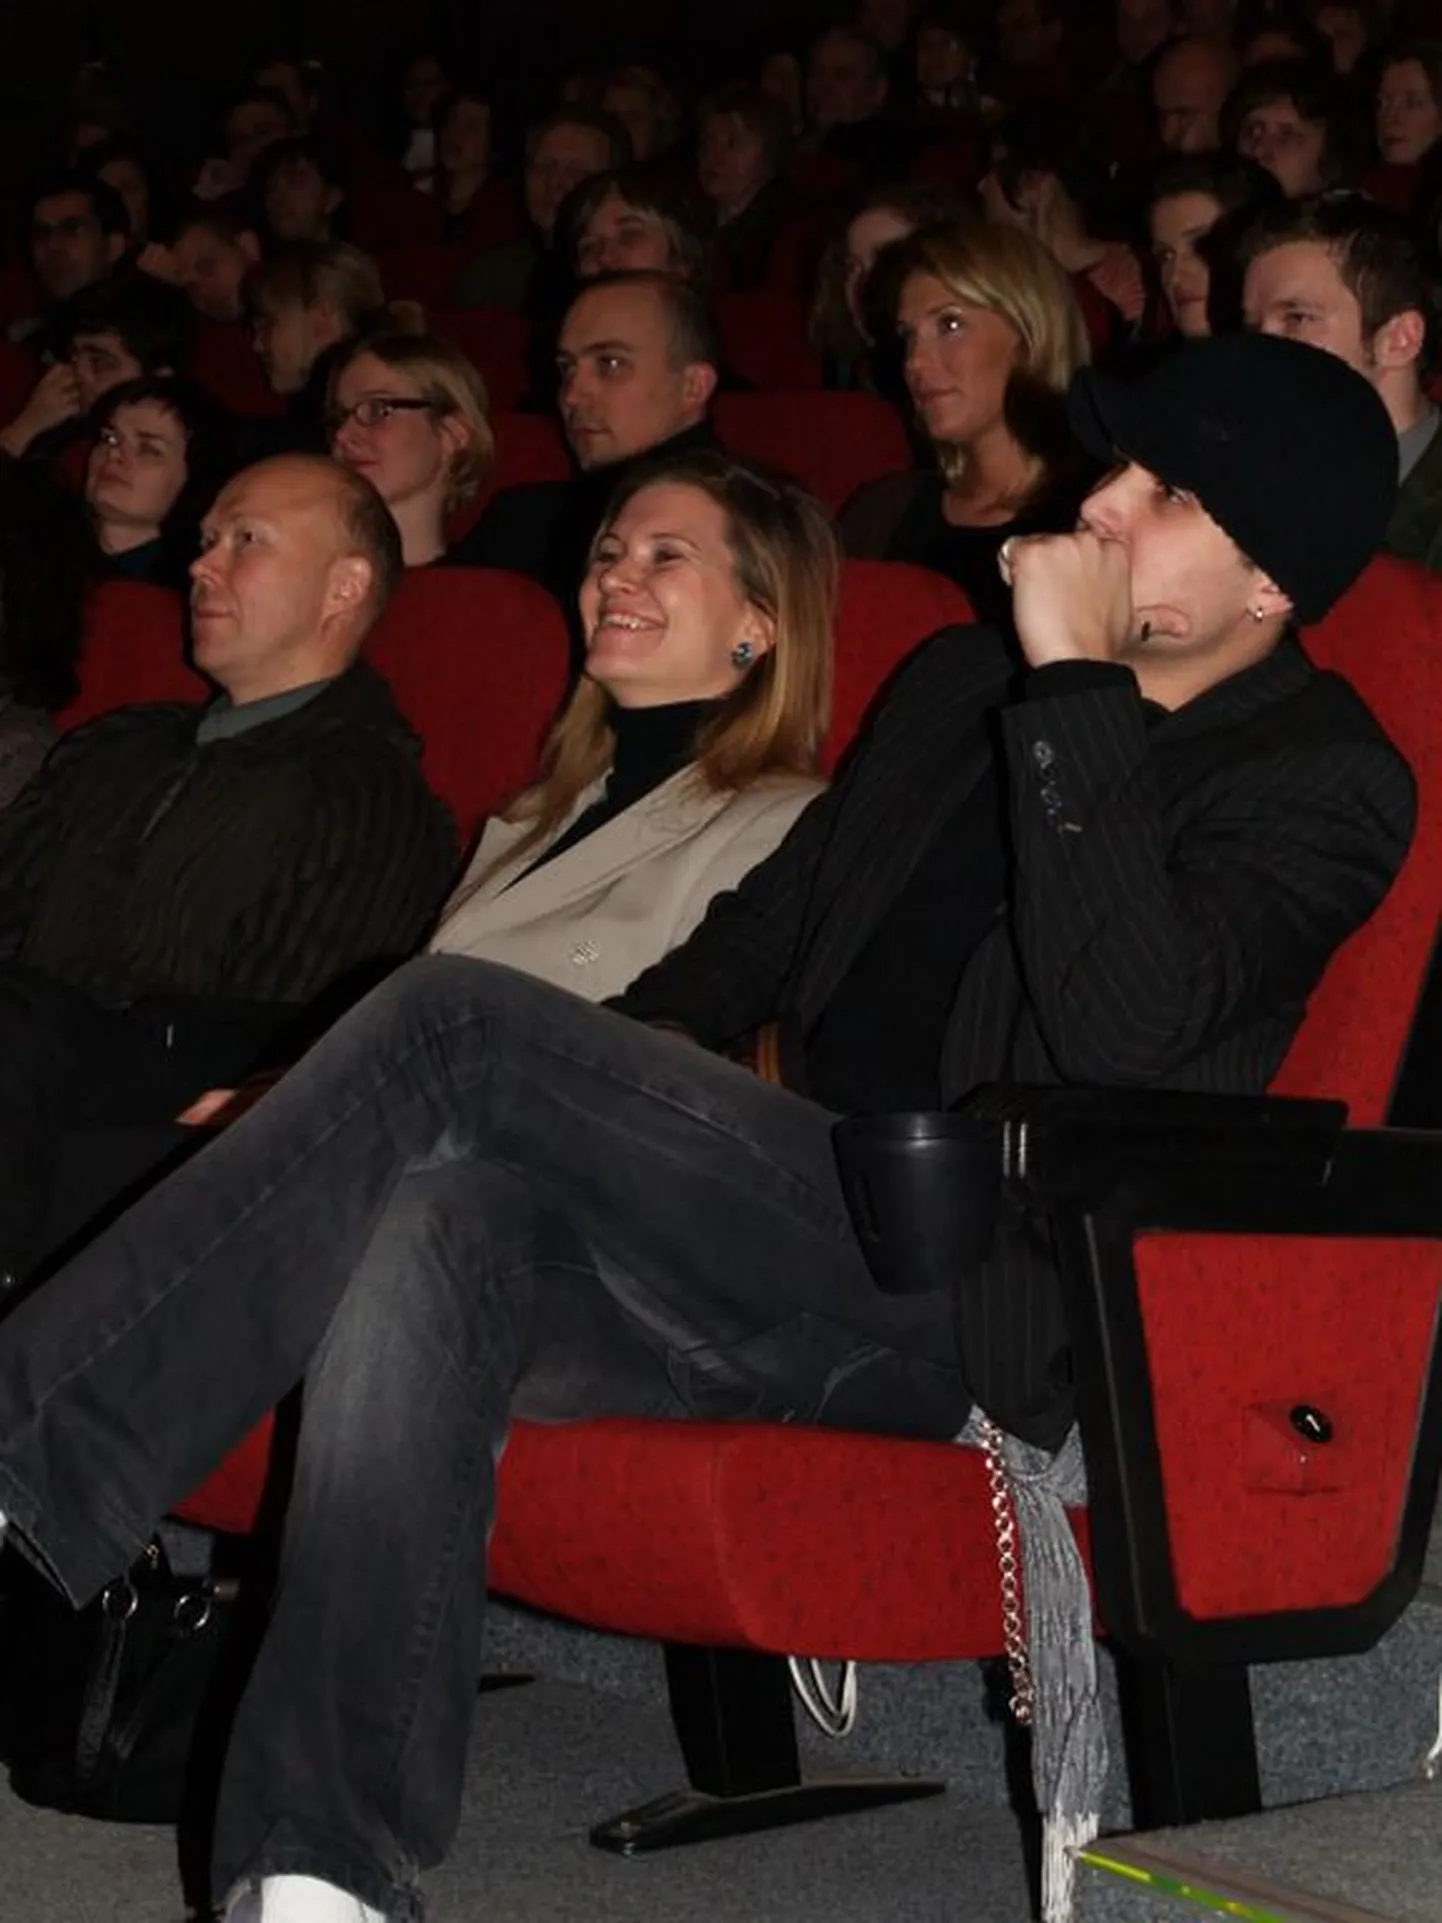 «Magnuse» esilinastus Cinema Rigas läks täissaalile. Esimeses reas paremalt peaosalist kehastanud Kristjan Kasearu ja reissöör Kadri Kõusaar.